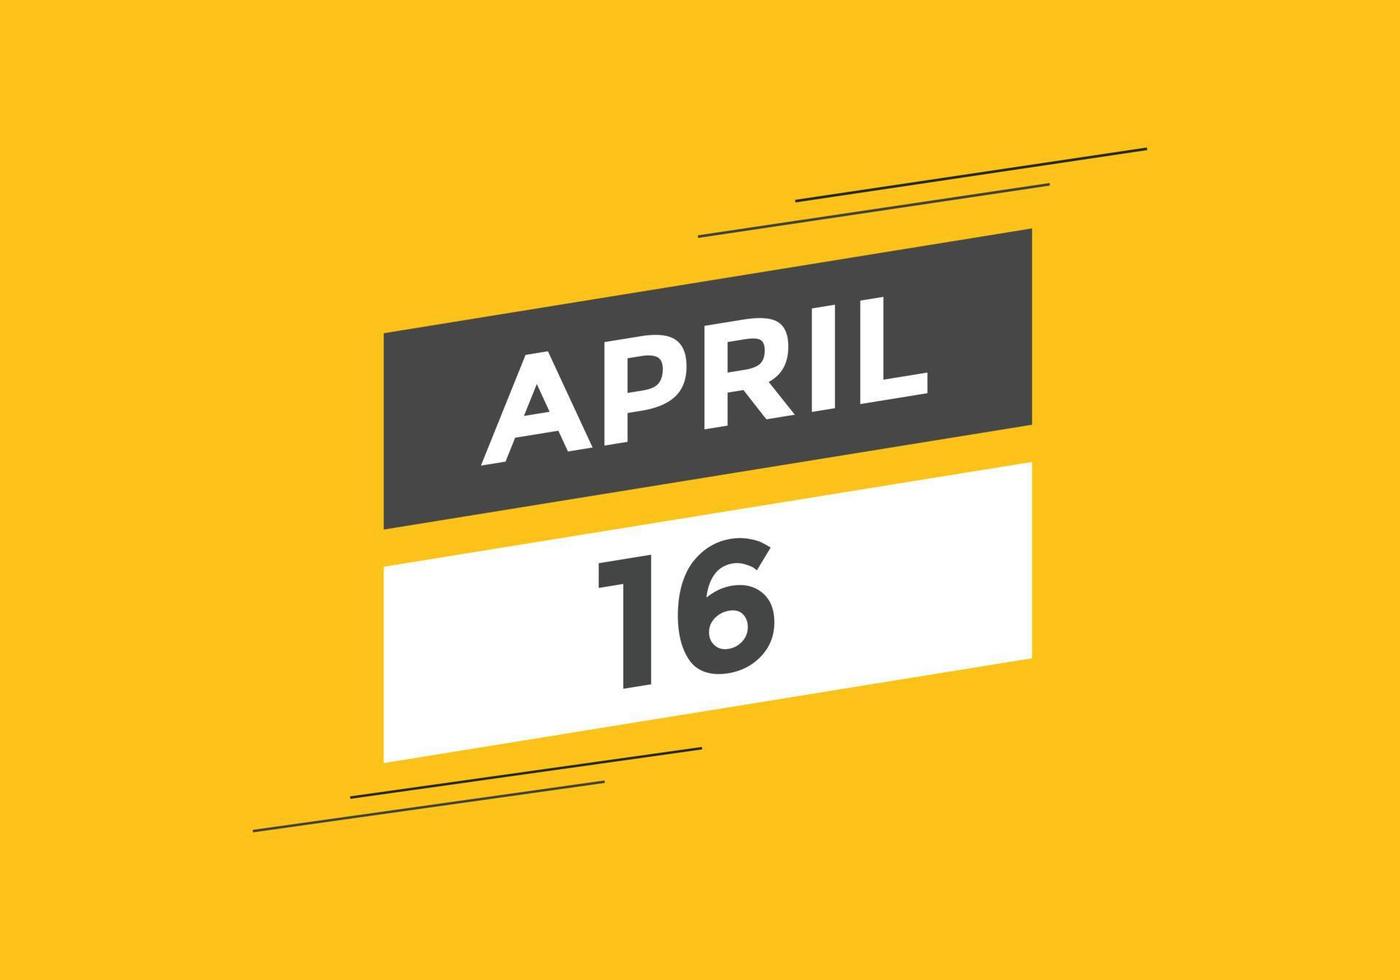 Recordatorio del calendario del 16 de abril. Plantilla de icono de calendario diario del 16 de abril. calendario 16 de abril plantilla de diseño de iconos. ilustración vectorial vector